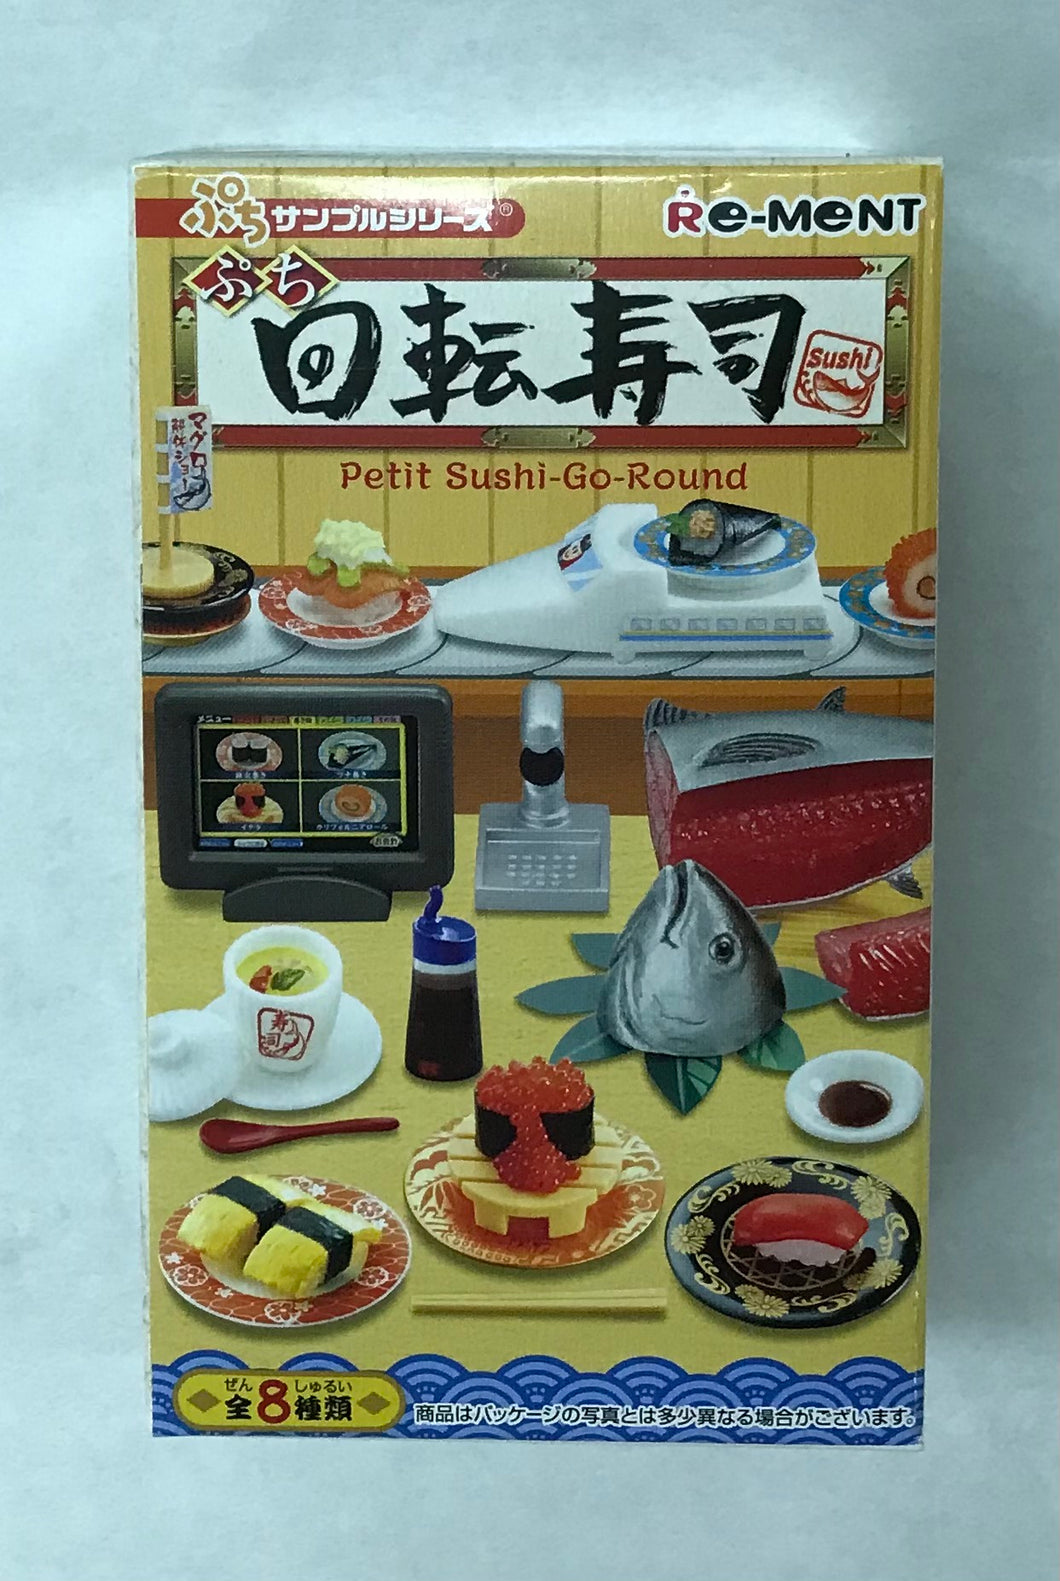 Blind Box - Petit Sushi-Go-Round